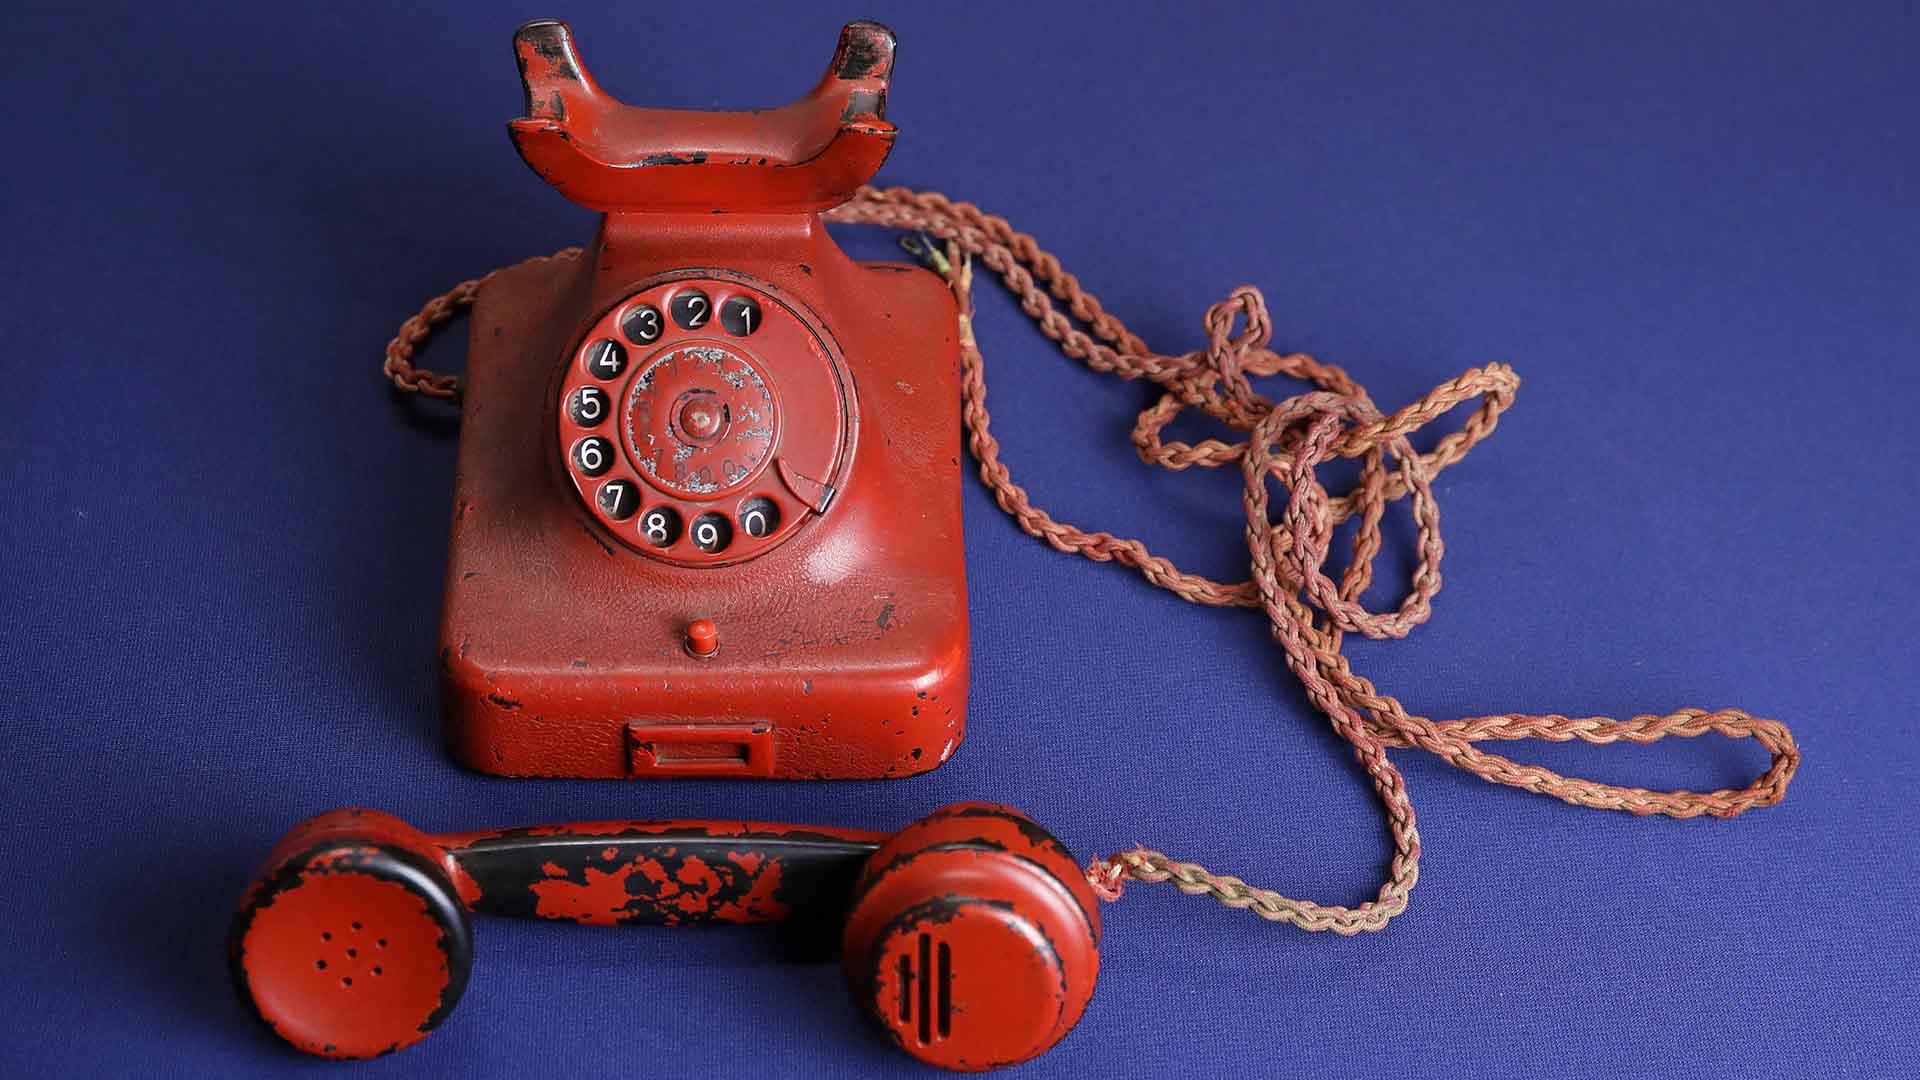 El teléfono que se uso en los últimos dos años del conflicto mundial fue subastado y adquirido por un coleccionista norteamericano